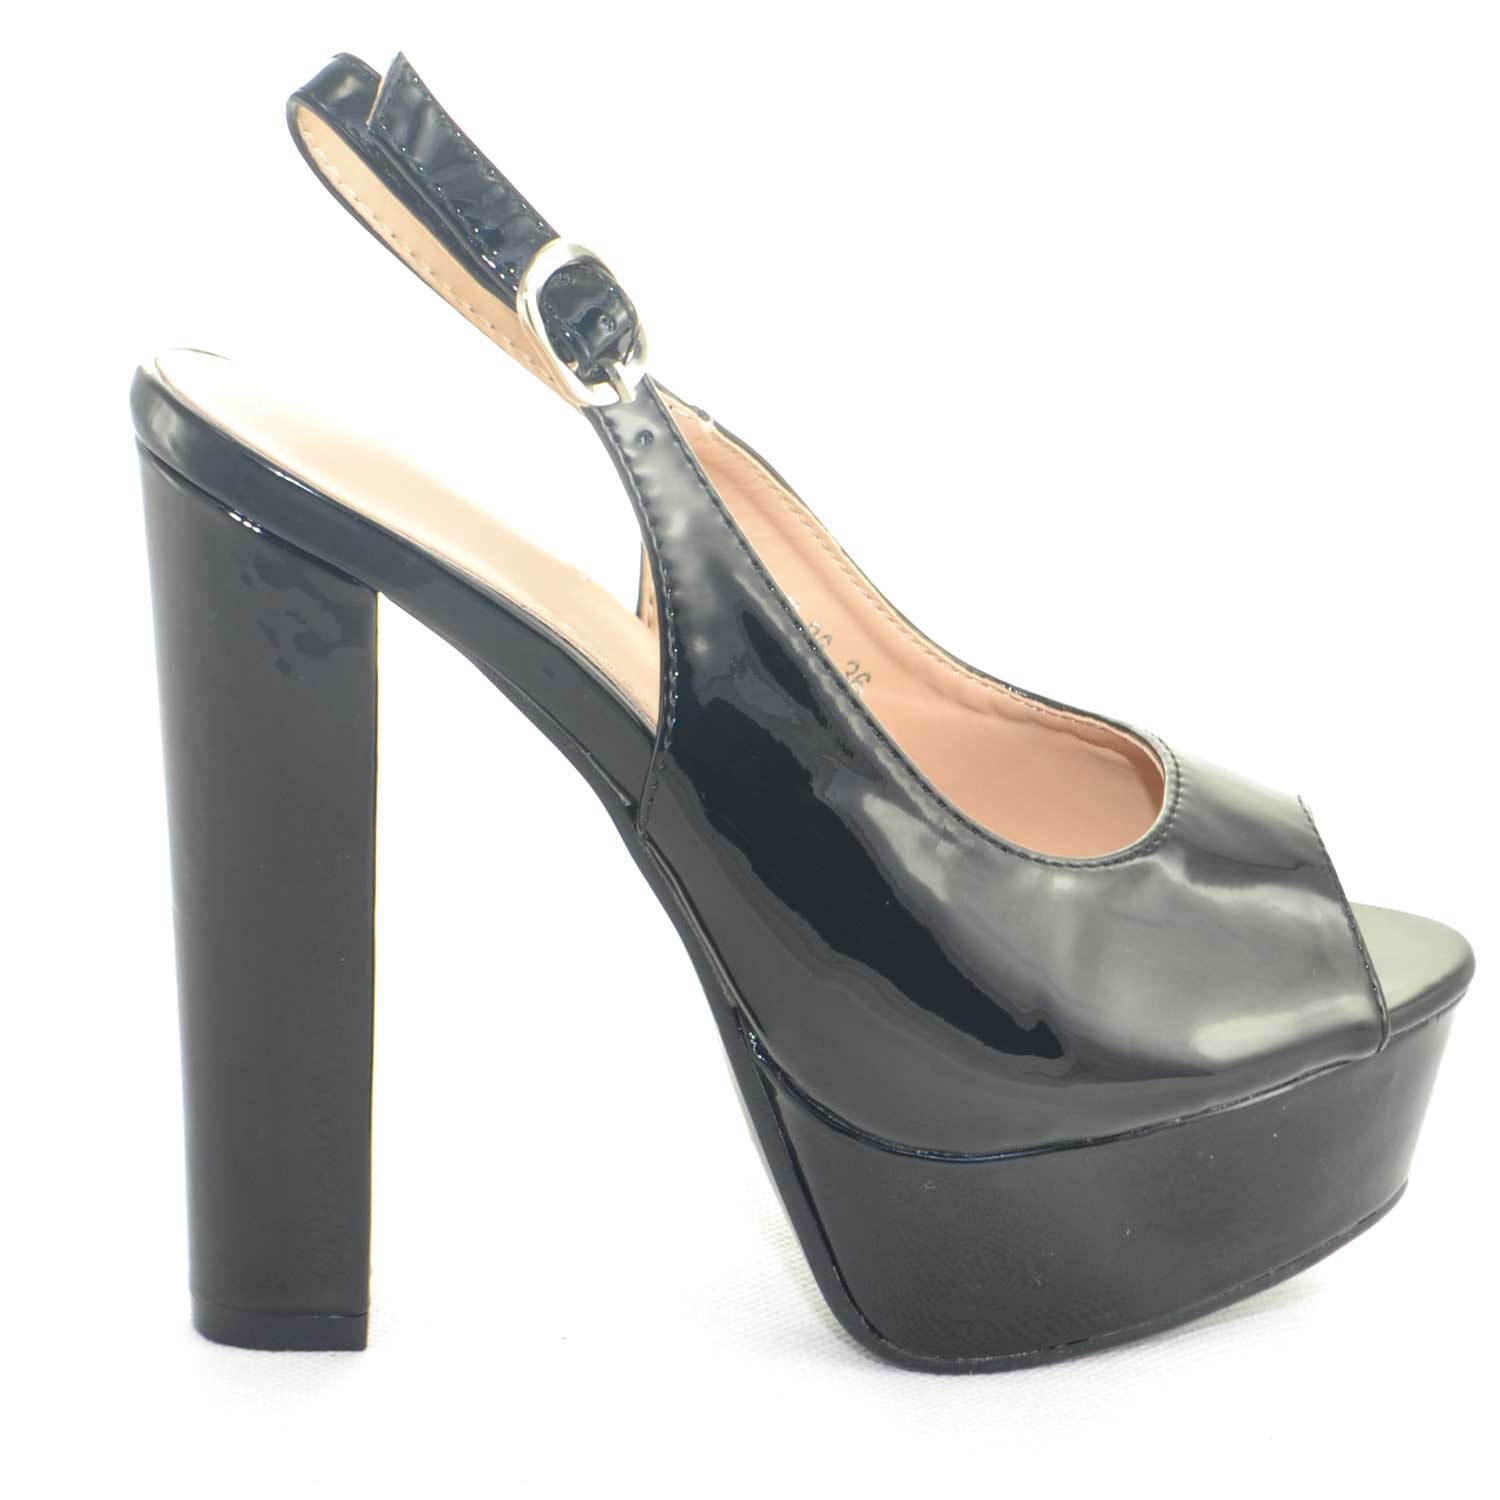 Sandalo donna alto nero lucido allacciatura cinturino open toe con plateau e tacco largo cerimonia moda comfort